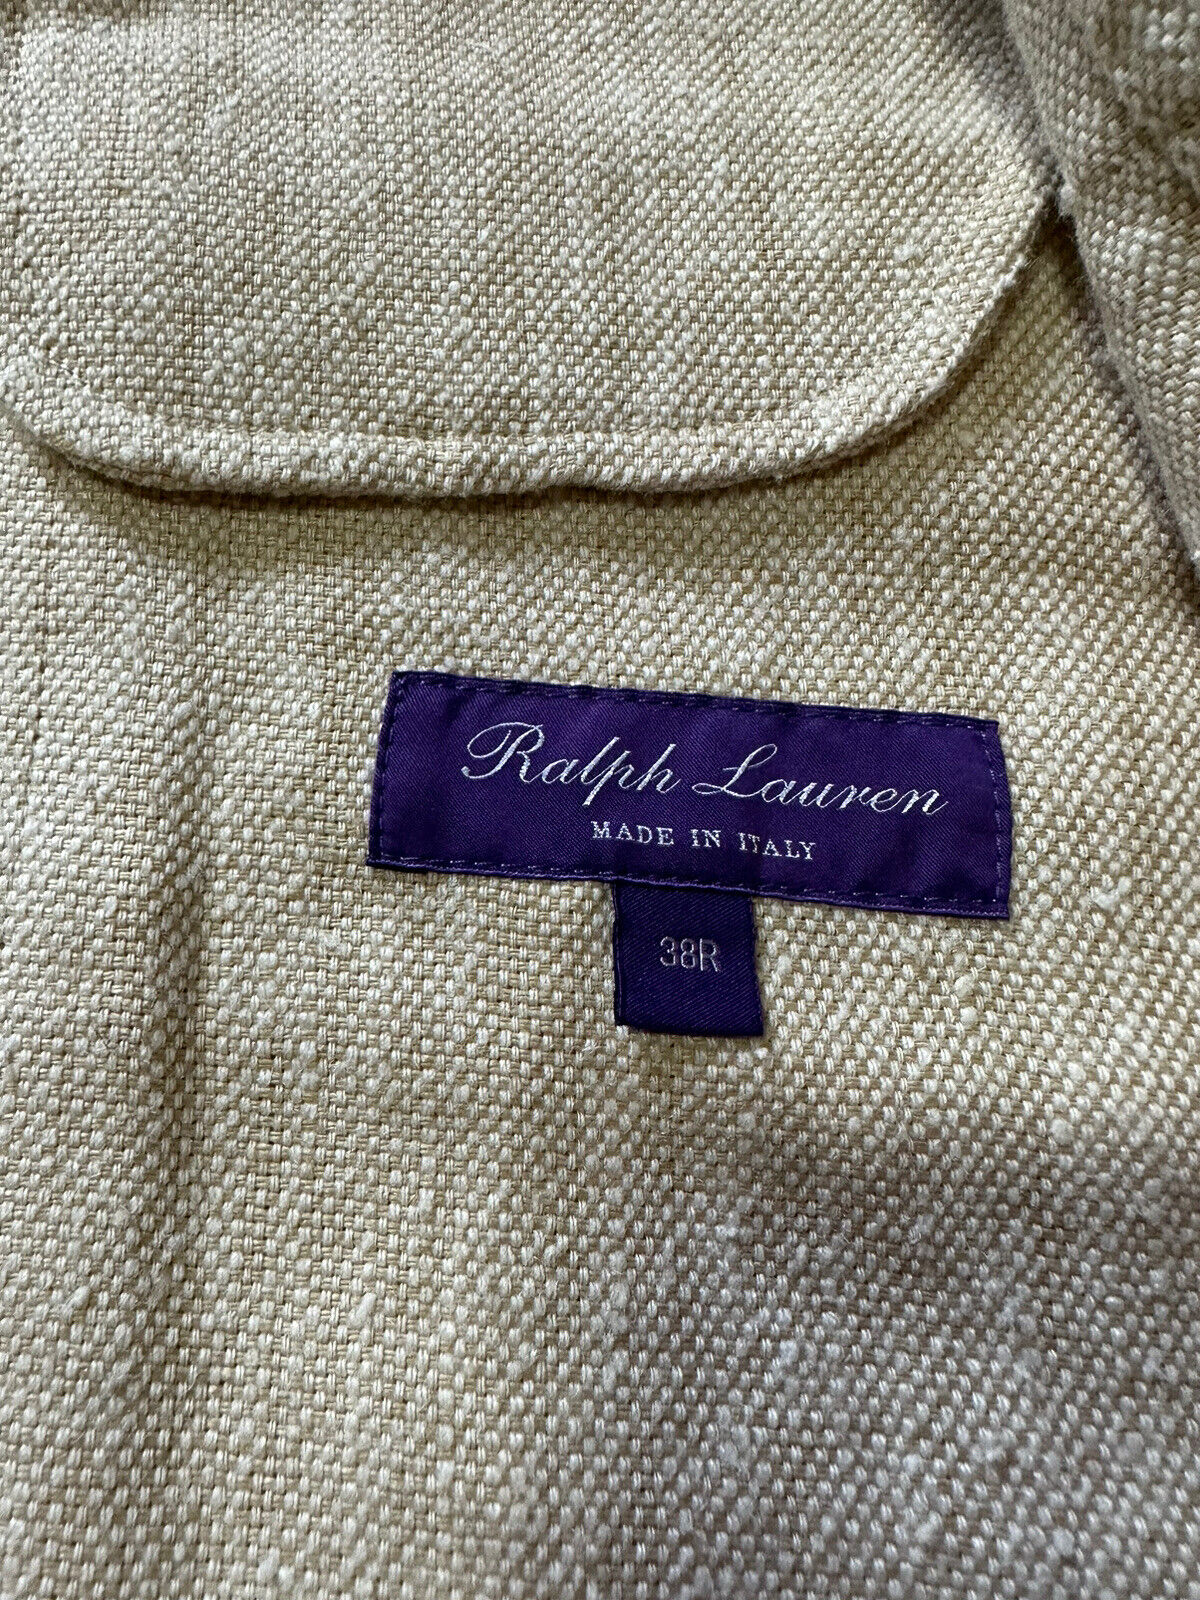 Neu mit Etikett: 2.895 $ Ralph Lauren Purple Label Herren-Leinenblazer Tun/Creme 38R US